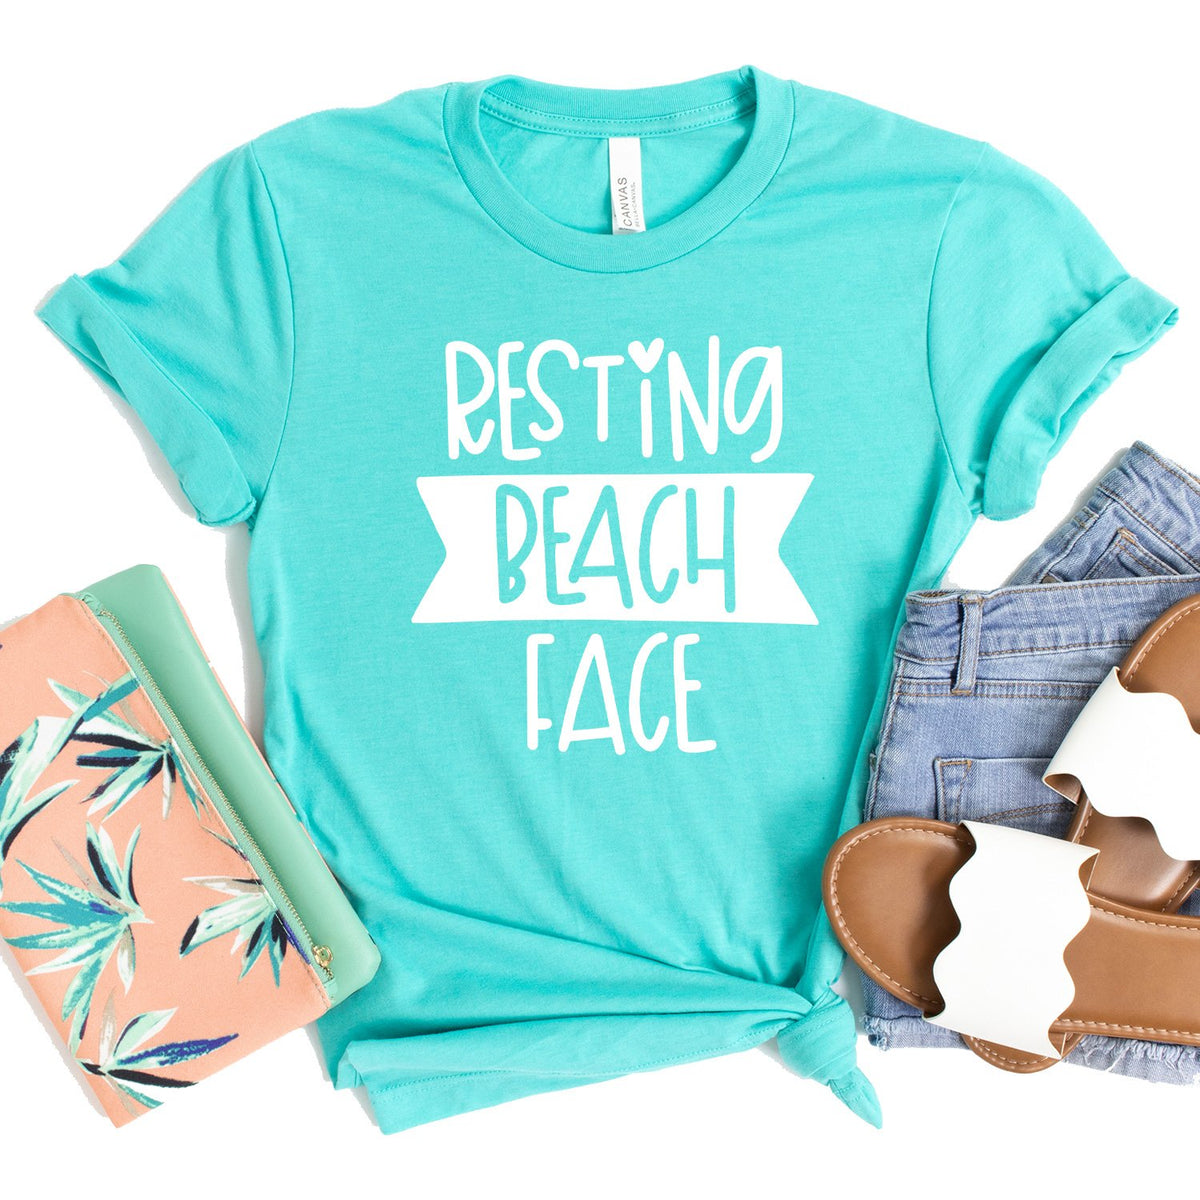 Resting Beach Face - Short Sleeve Tee Shirt